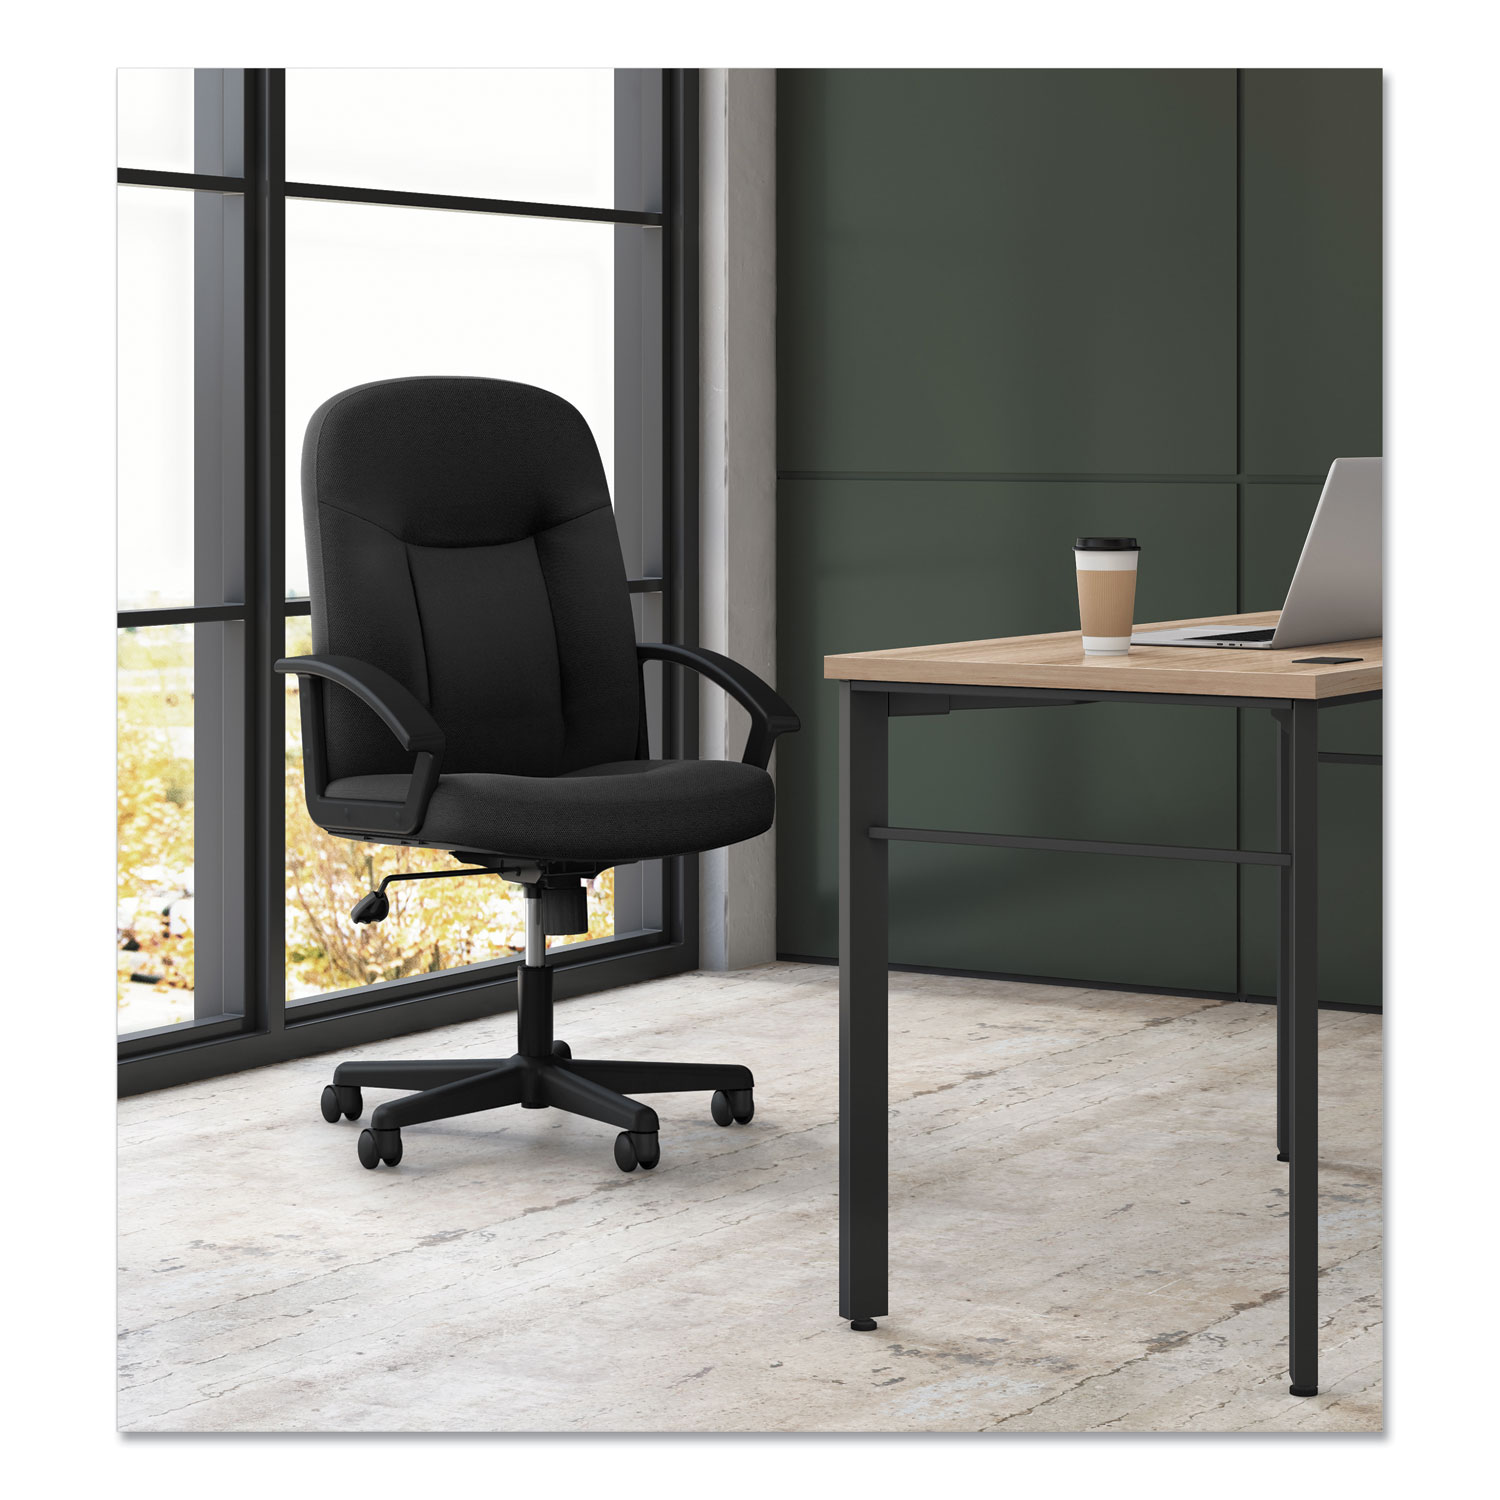 HON VL601VA10 VL601 Series Executive High-Back Swivel/Tilt Chair